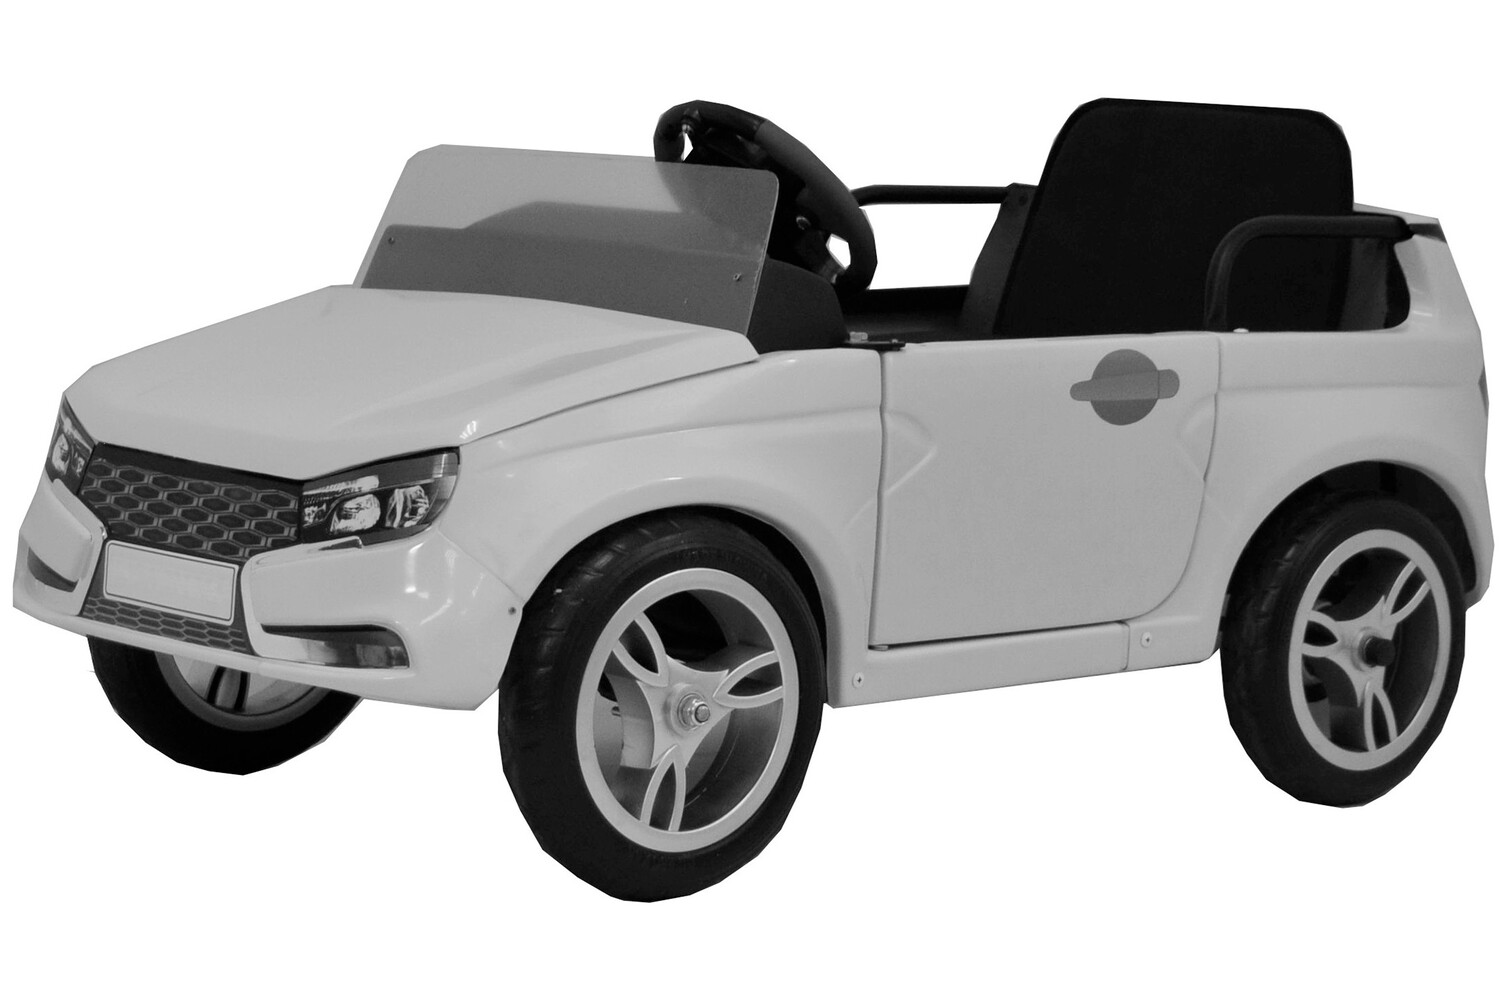 ФИПС запатентовал детский кабриолет в стиле Lada Vesta